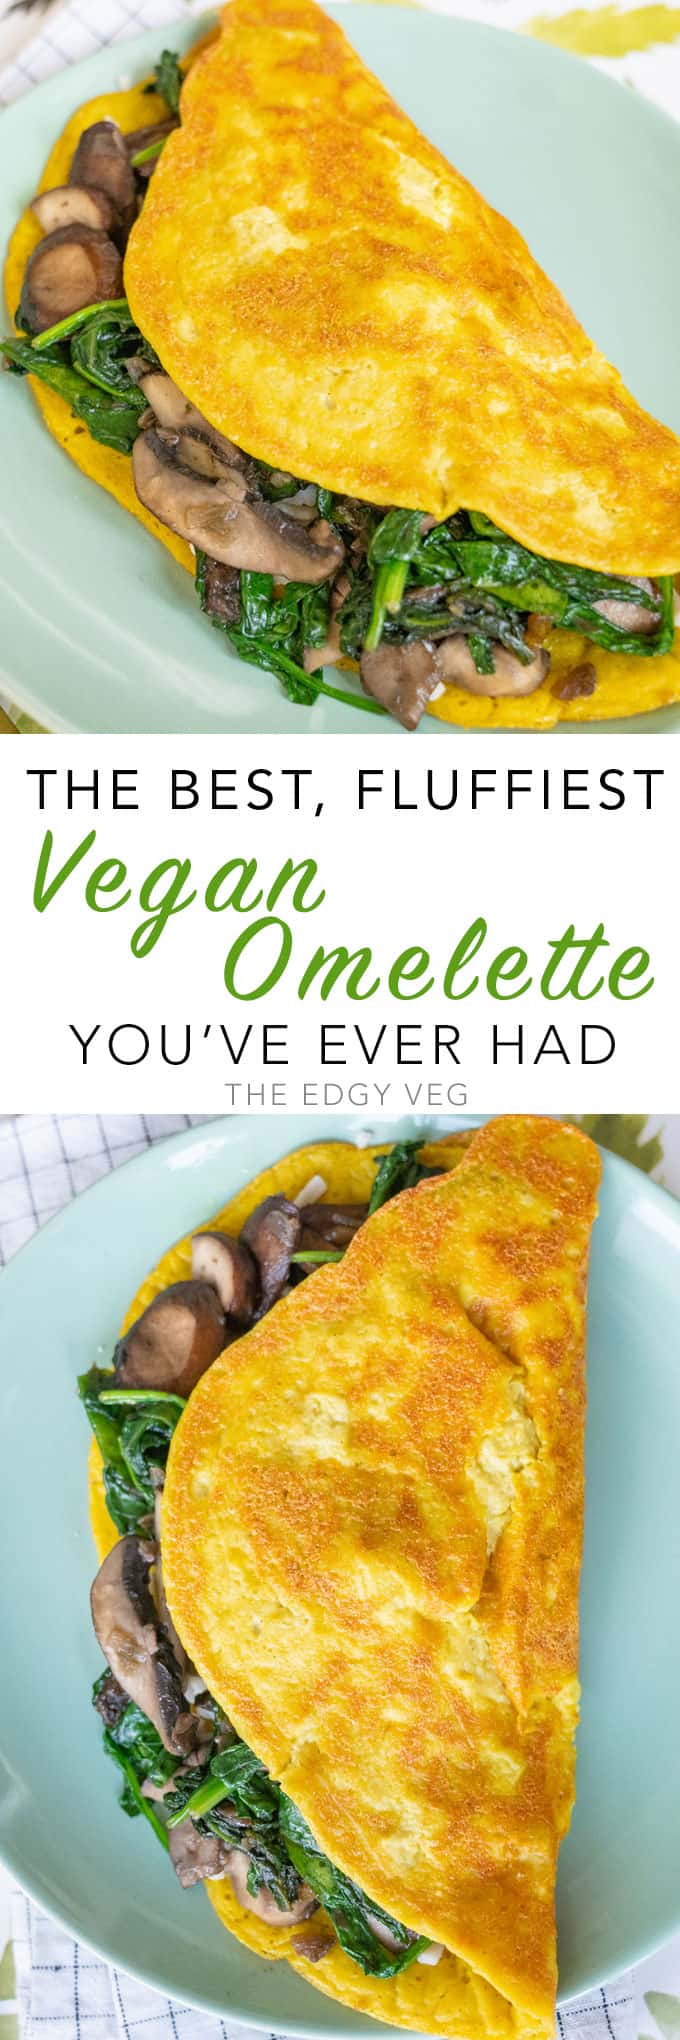 Best Vegan Omelette